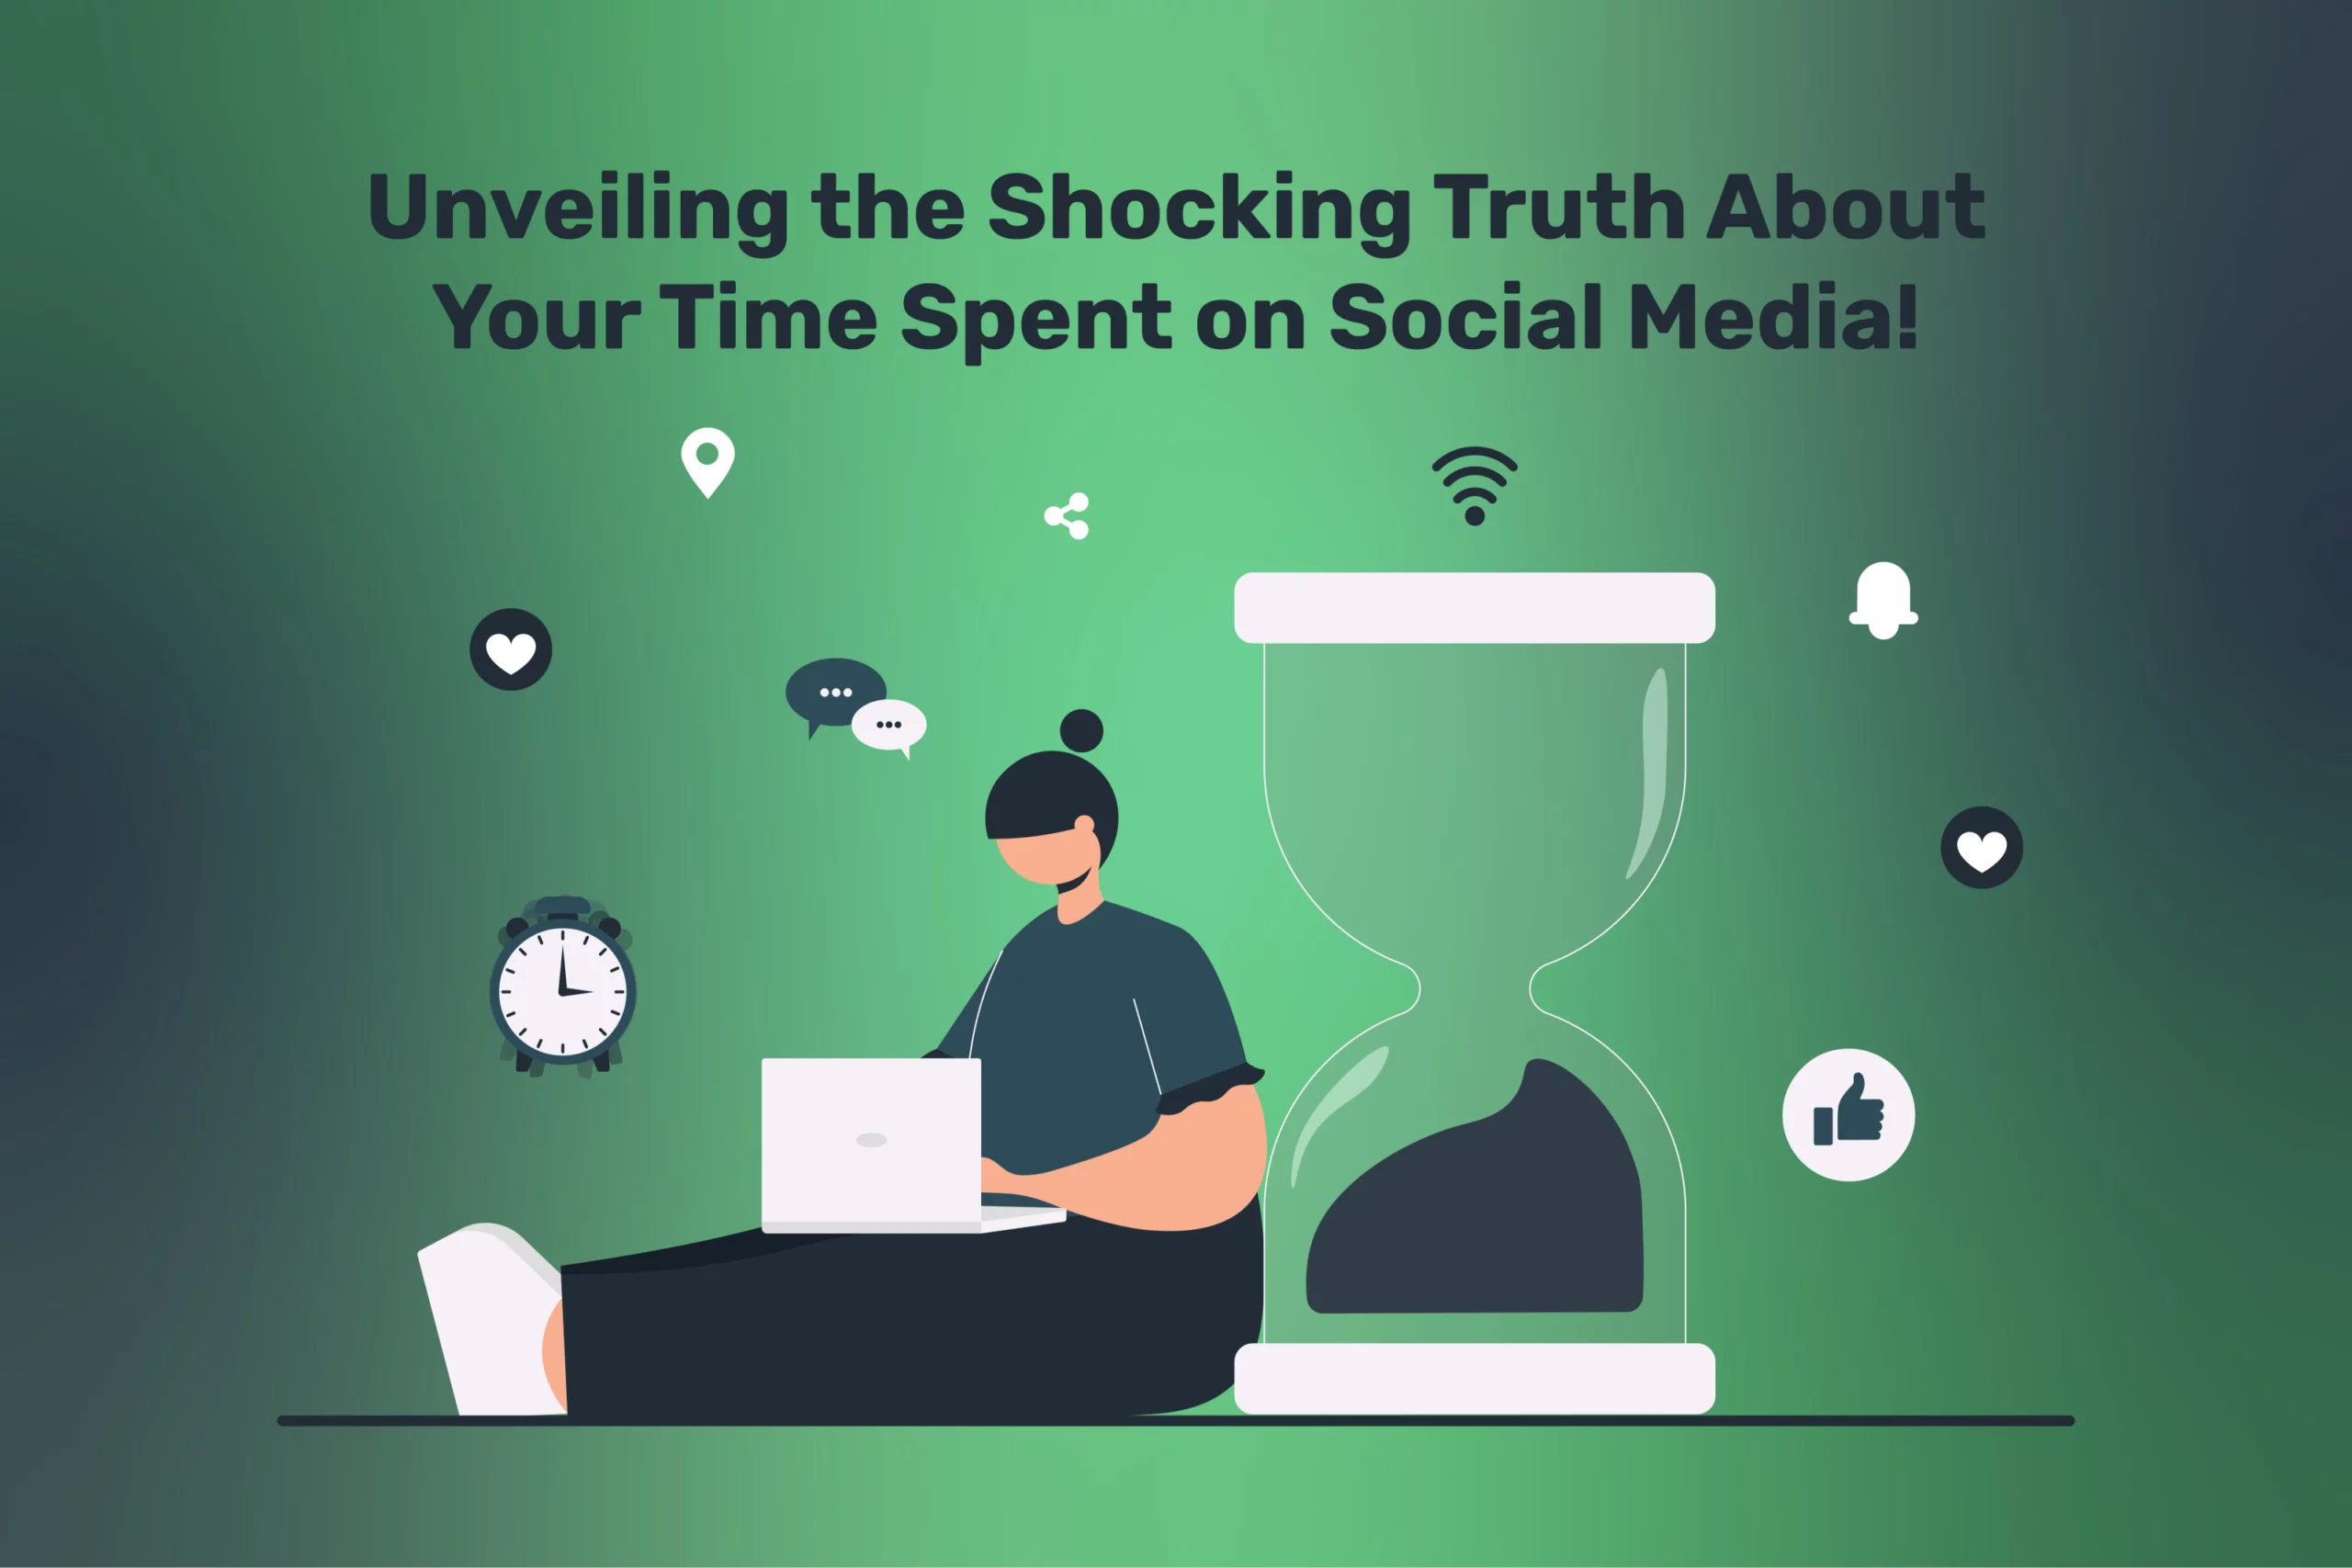 Time Spent on Social Media